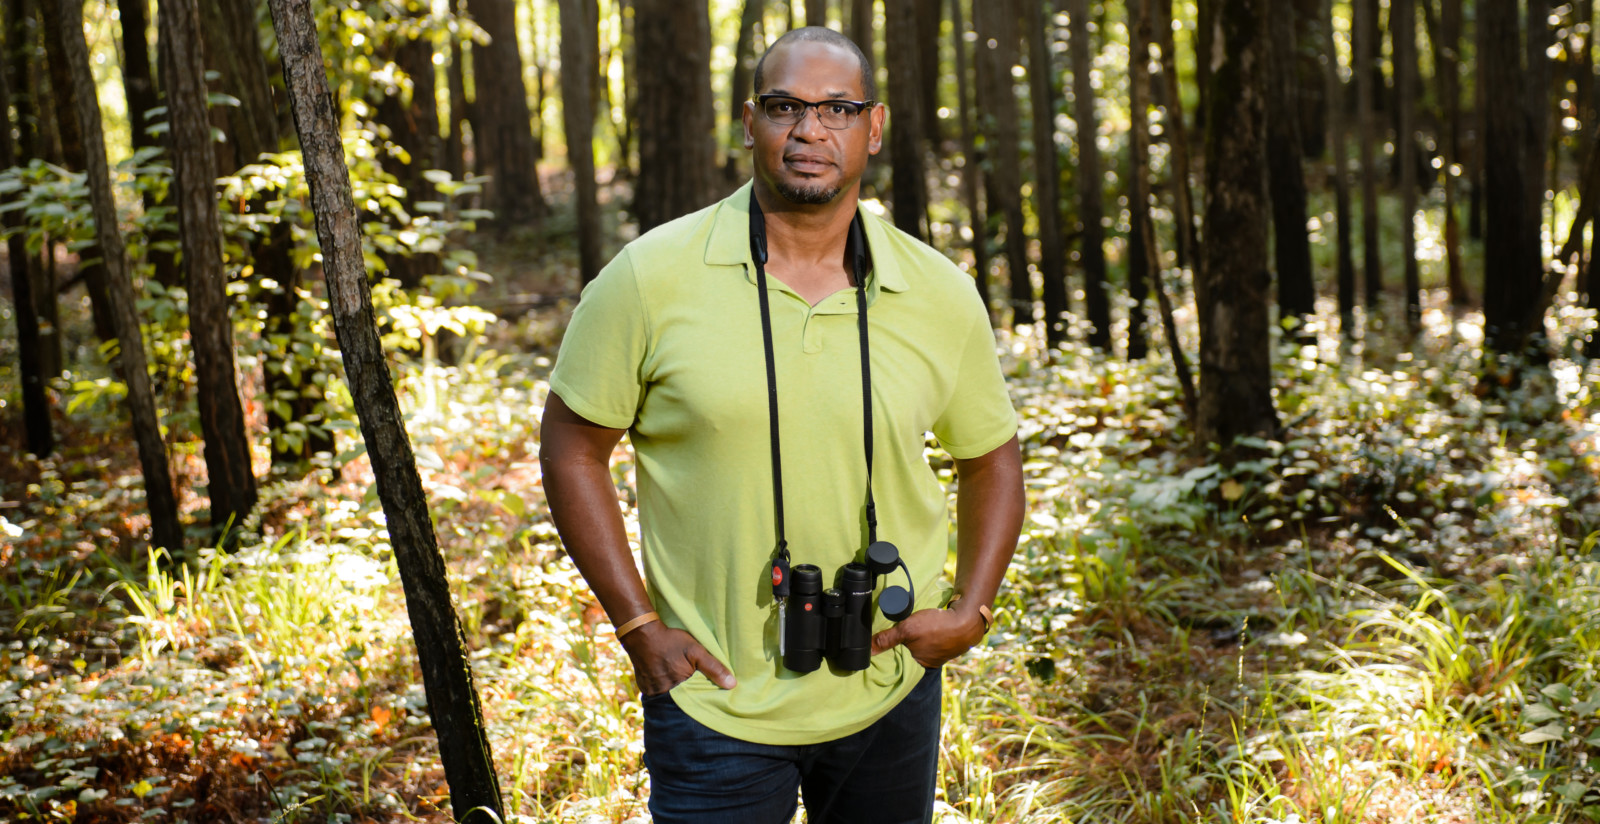 J. Drew Lanham with binoculars in the woods.